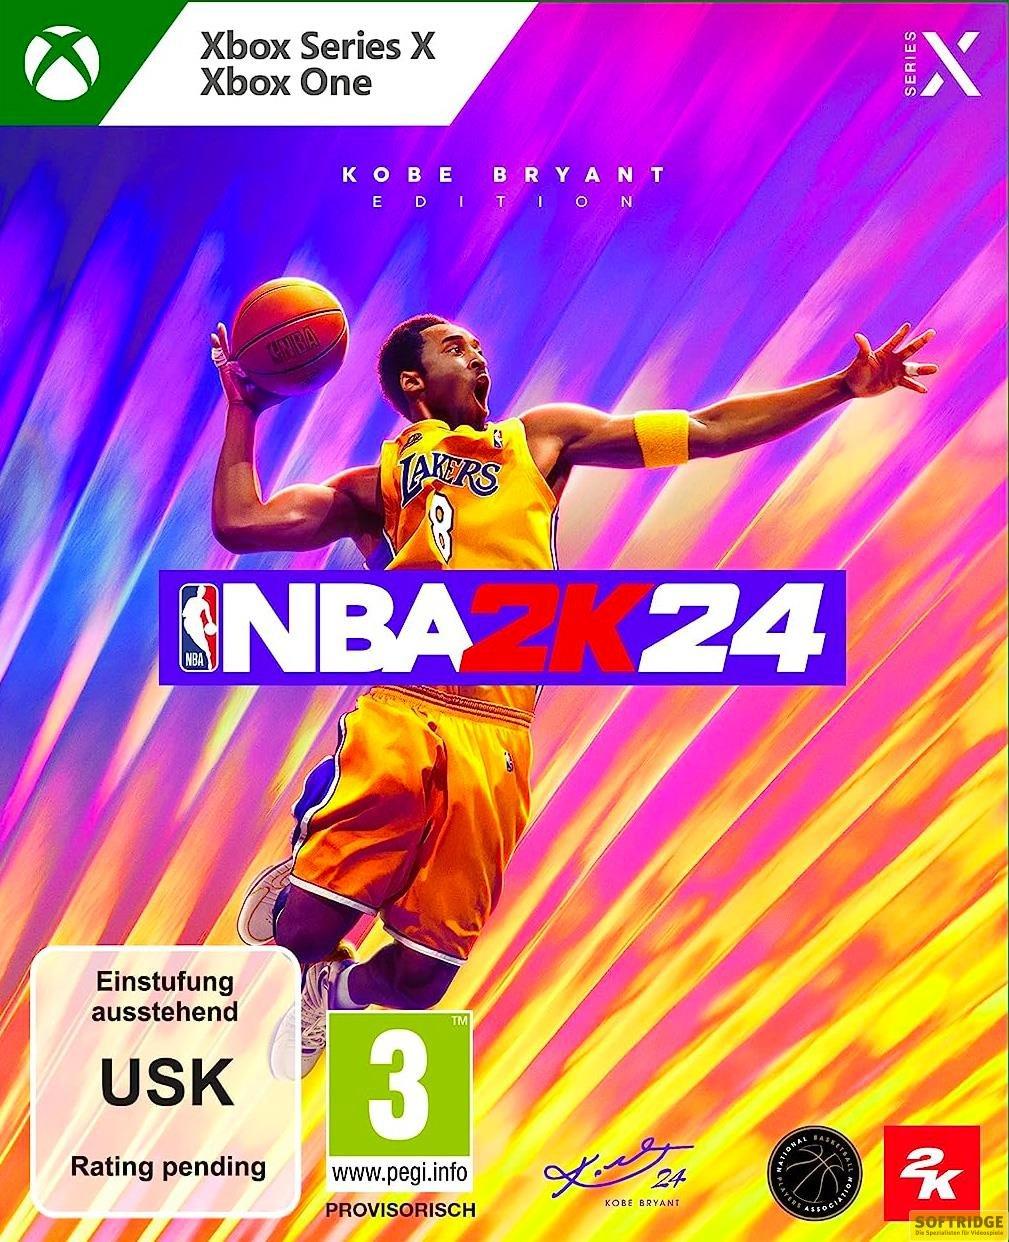 2K Spielesoftware »NBA 2K24«, Xbox Series X-Xbox One